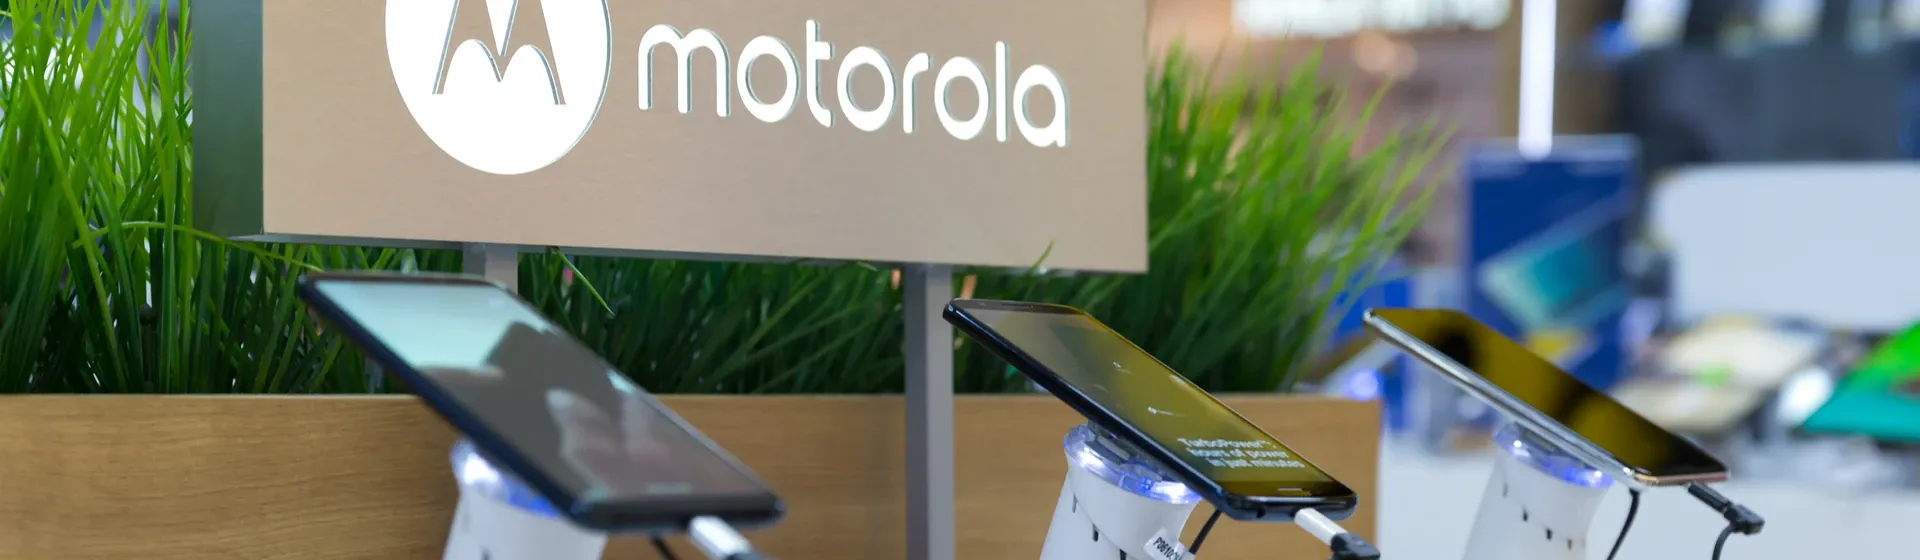 Celular Motorola barato: veja modelos por até R$ 1.300 para 2022